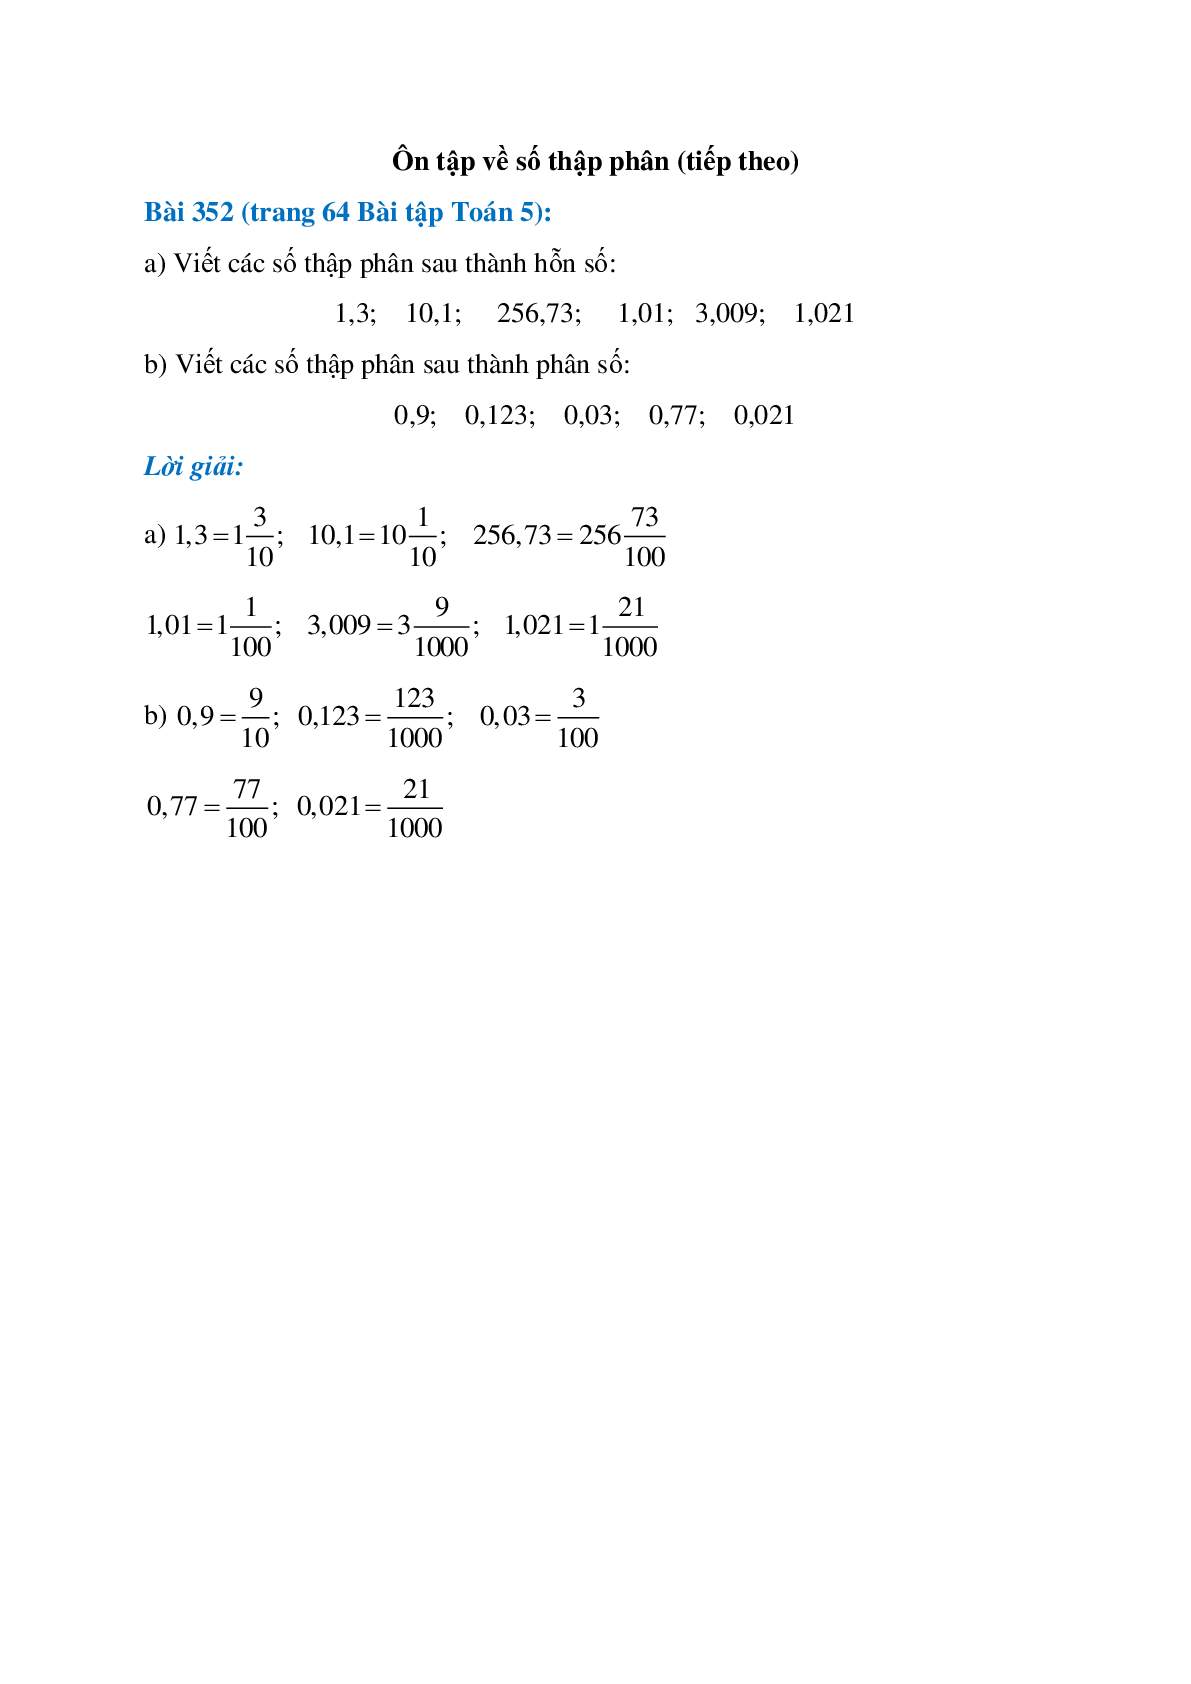 Viết các số thập phân sau thành hỗn số: 1,3; 10,1; 256,73 (trang 1)